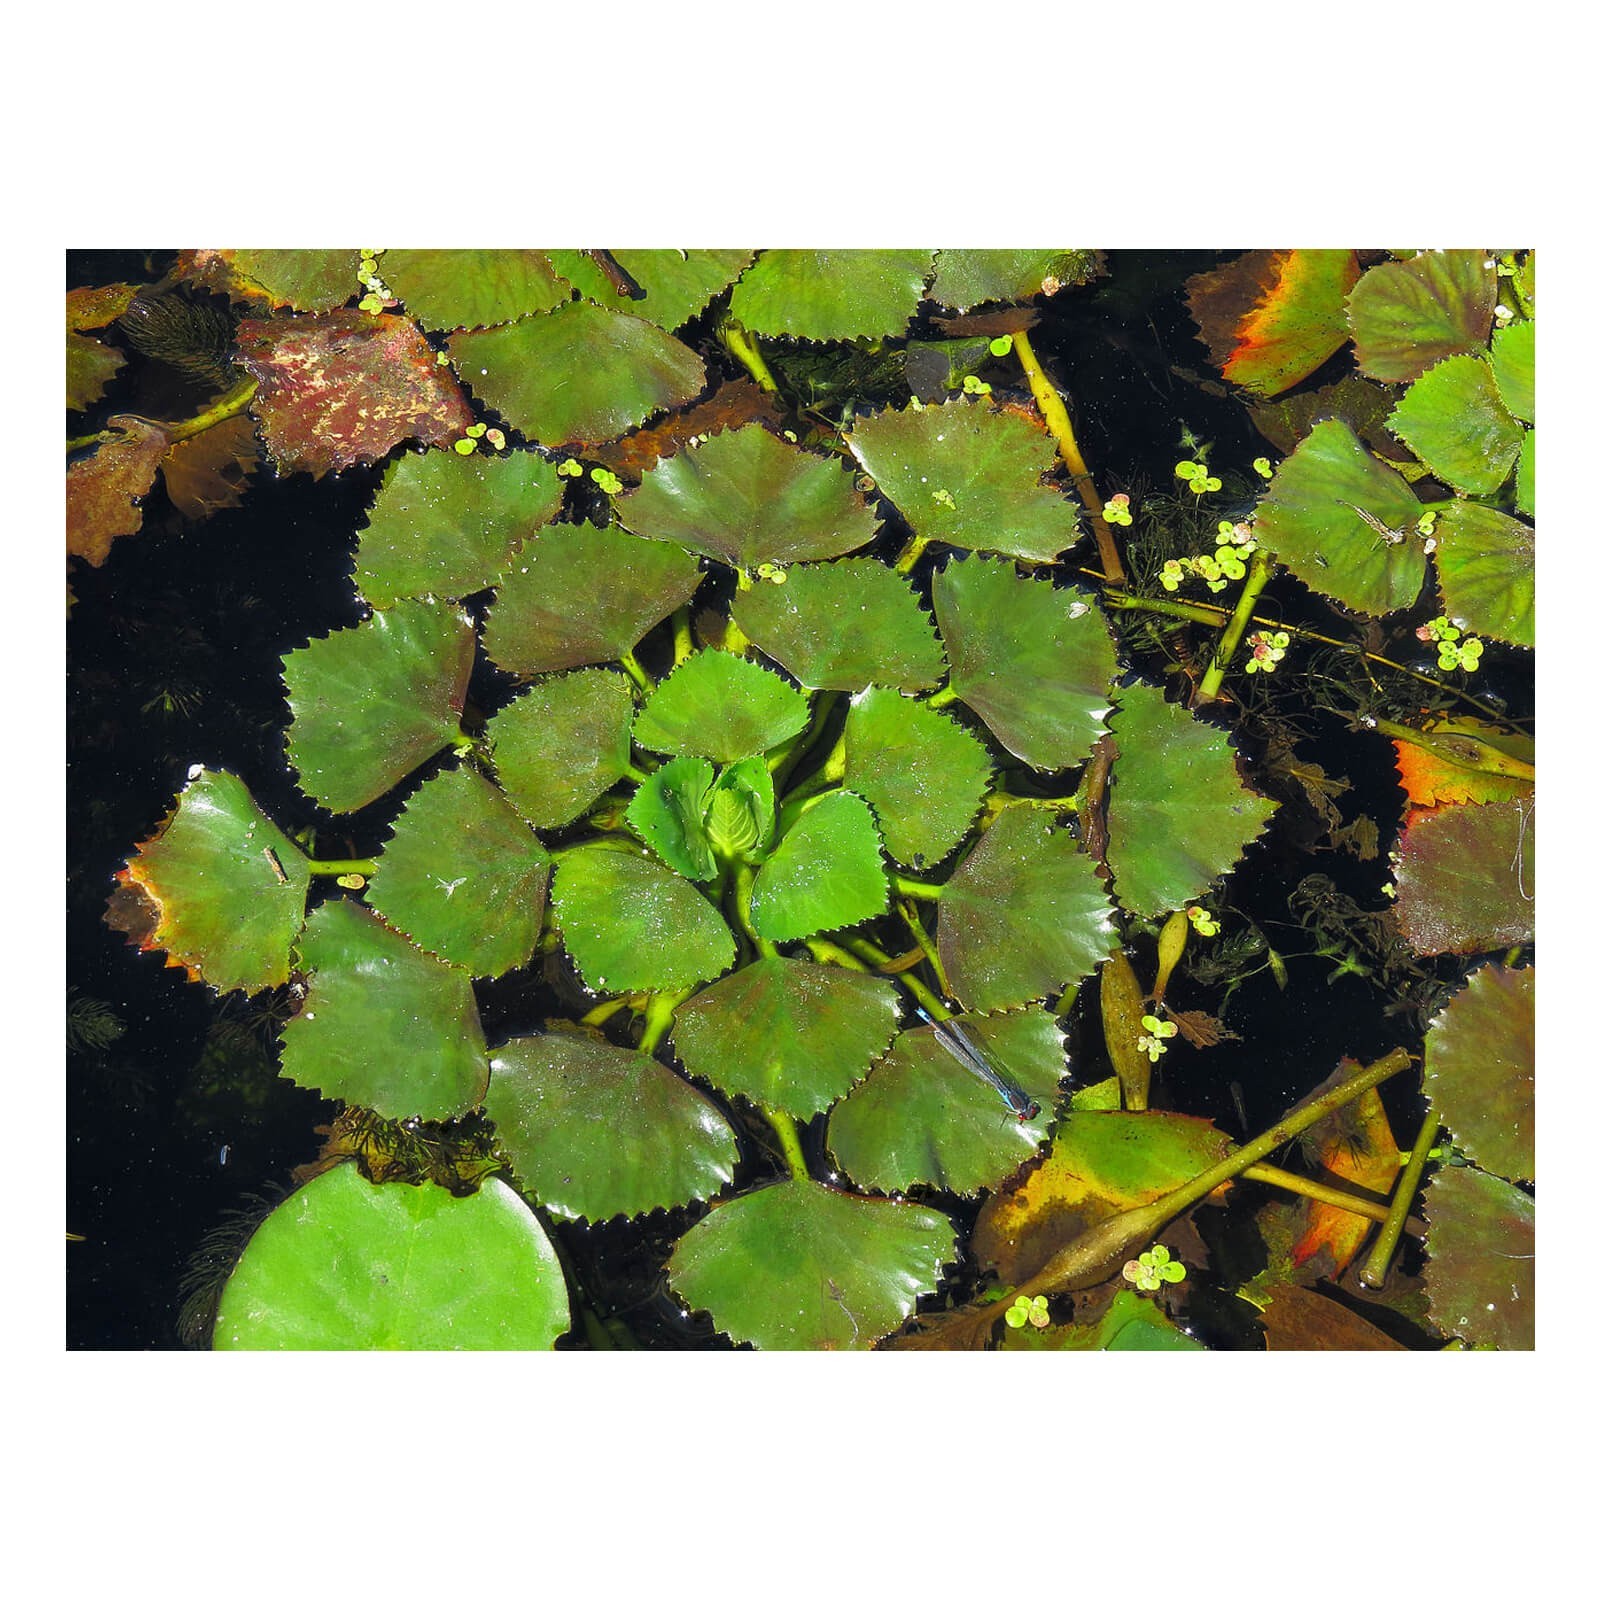 Trapa natans pianta galleggiante Castagna d'acqua